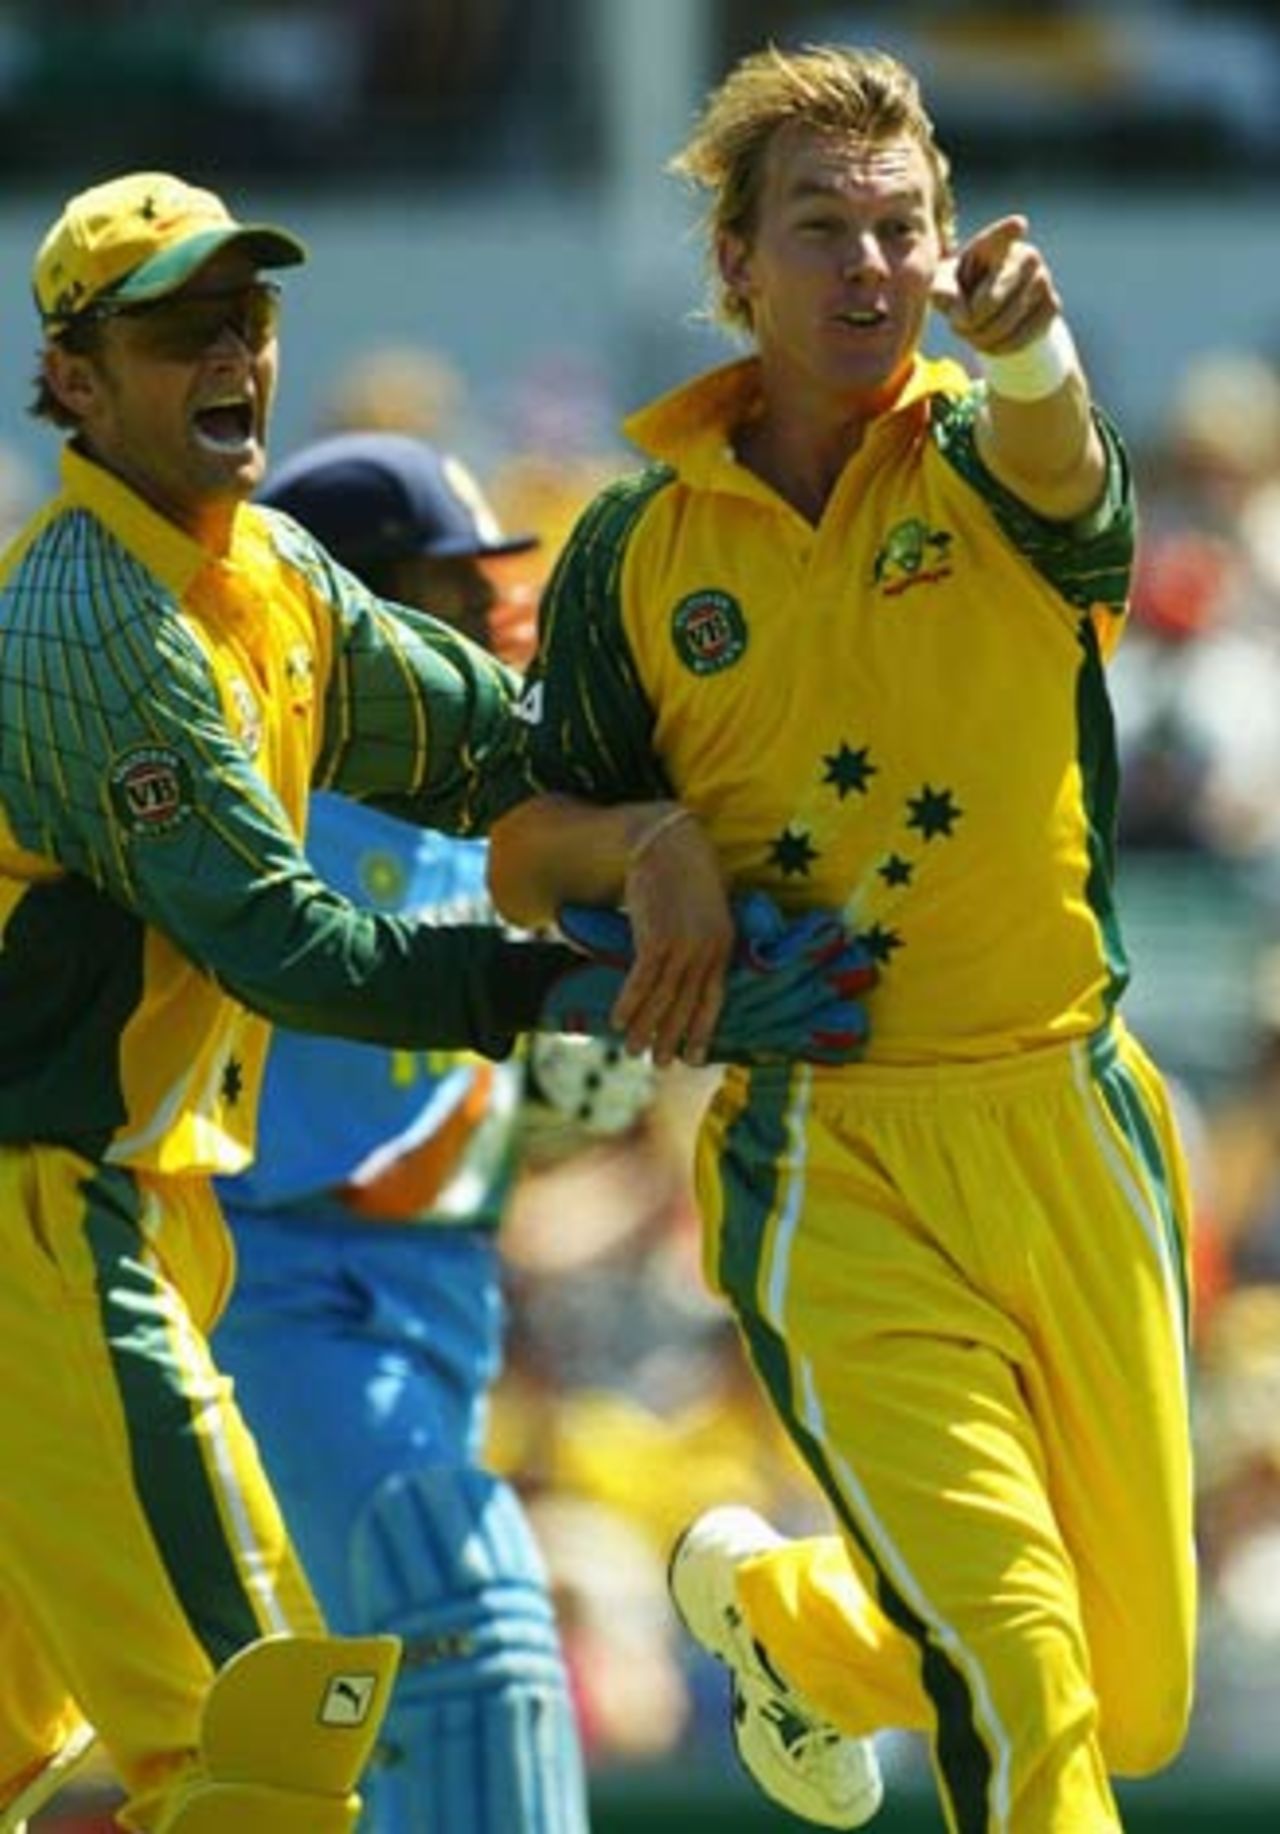 Australia get off to a dream start as Brett Lee nails Sachin Tendulkar, Australia v India, 11th match, VB Series, Perth, February 1, 2004